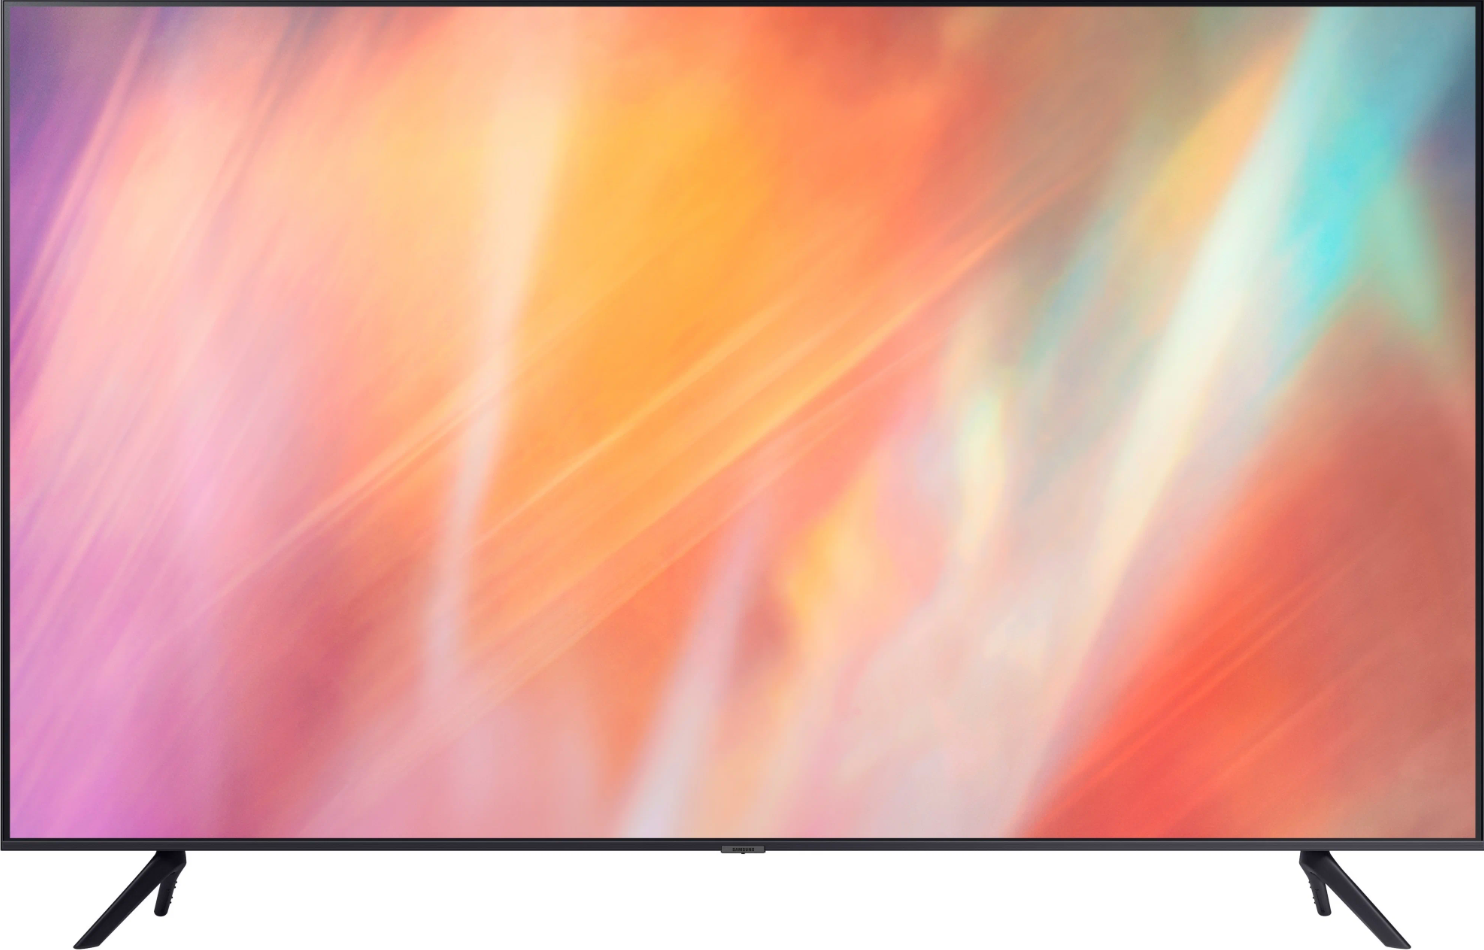 55" Телевизор Samsung UE55AU7100U 2021 LED, HDR, Crystal UHD, QLED RU, черный